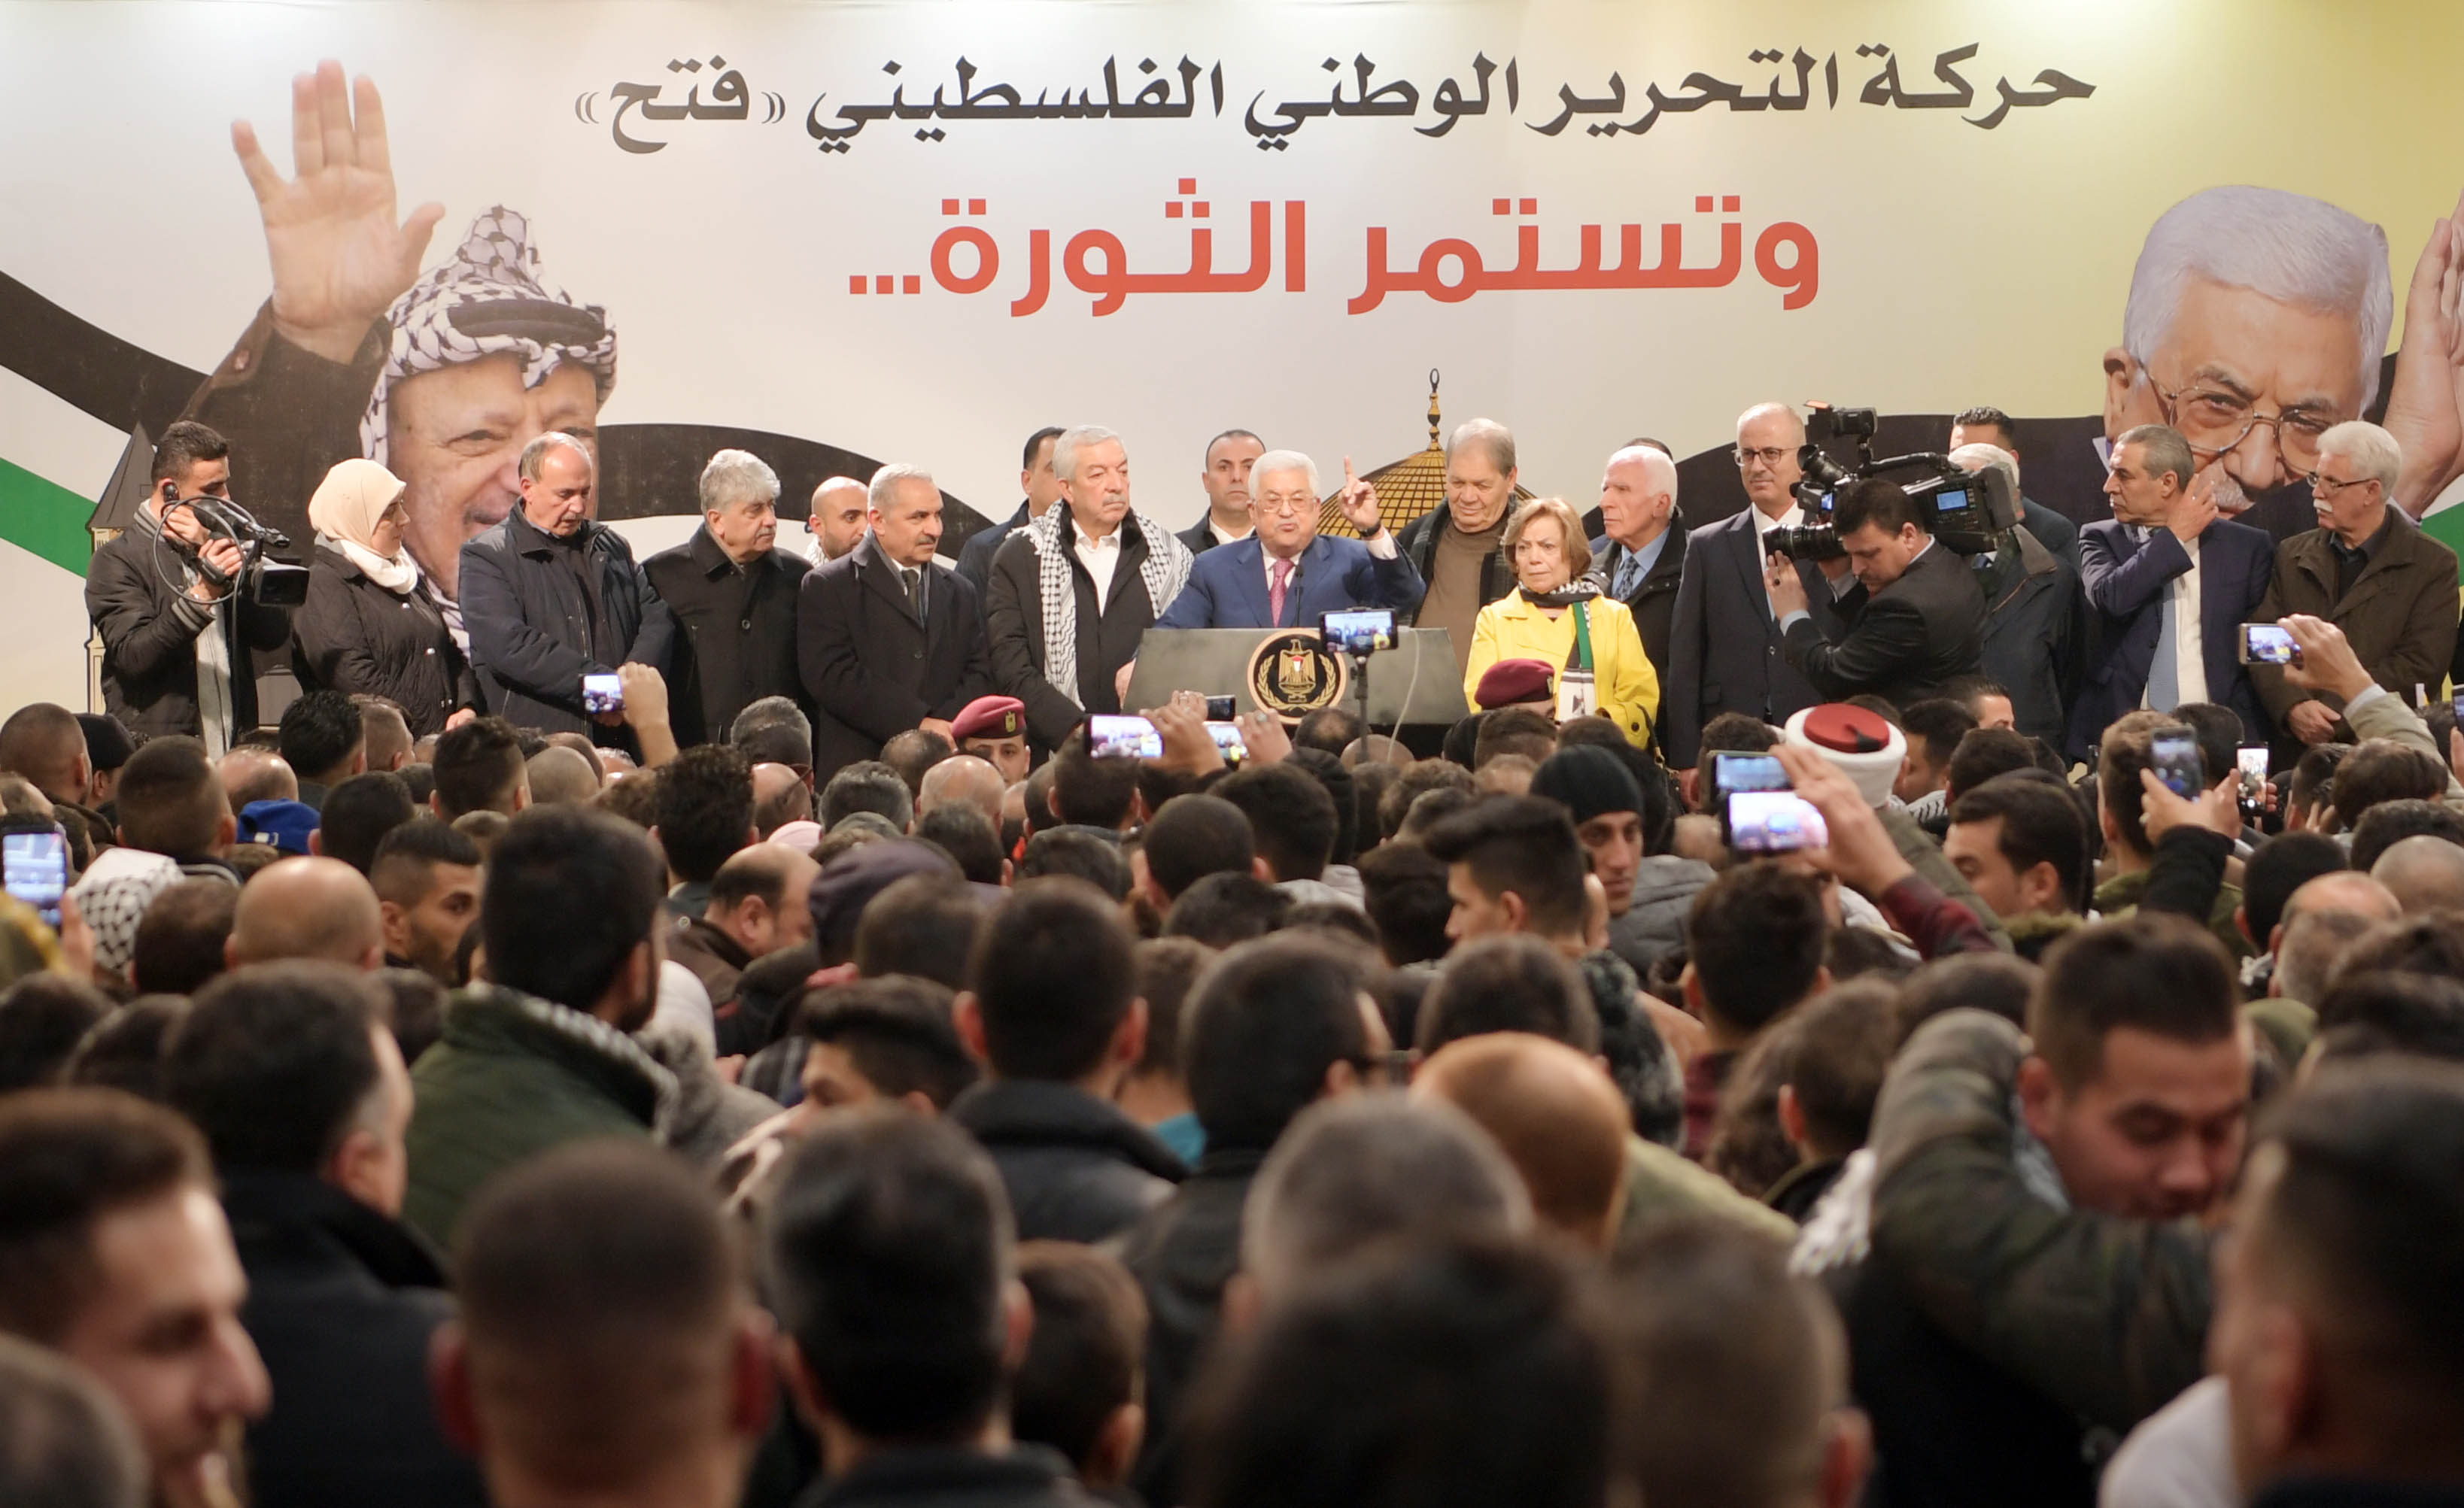 الرئيس خلال مهرجان ايقاد الشعلة الـ54 لانطلاقة ثورة فلسطين